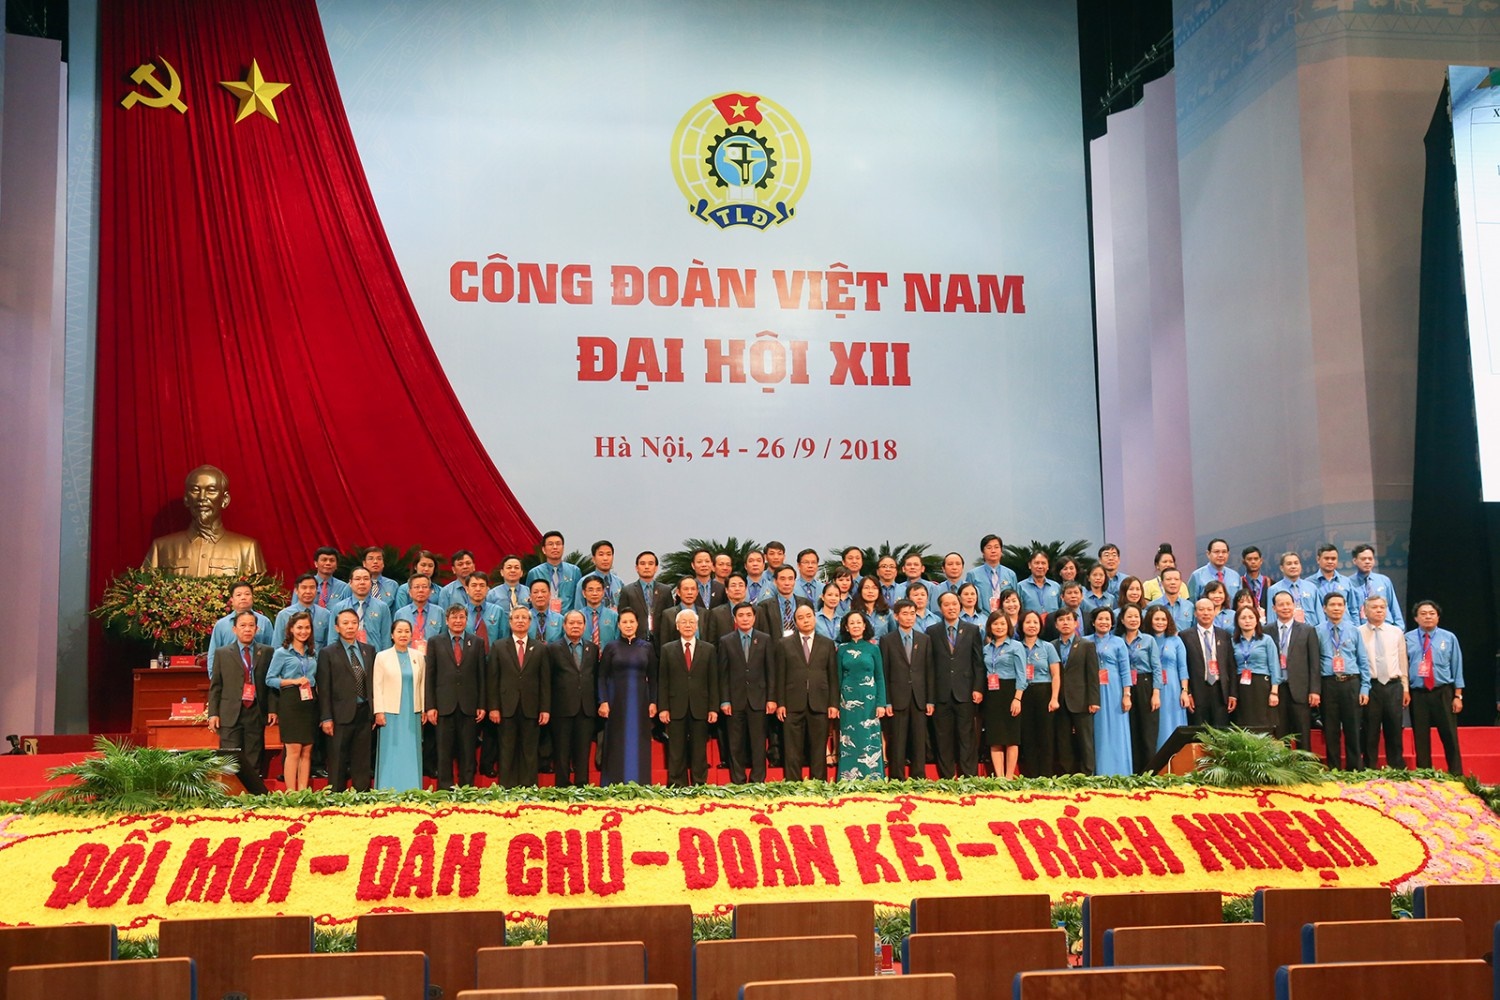 Đại hội Công đoàn Việt Nam lần thứ XII nhiệm kỳ 2018 - 2023